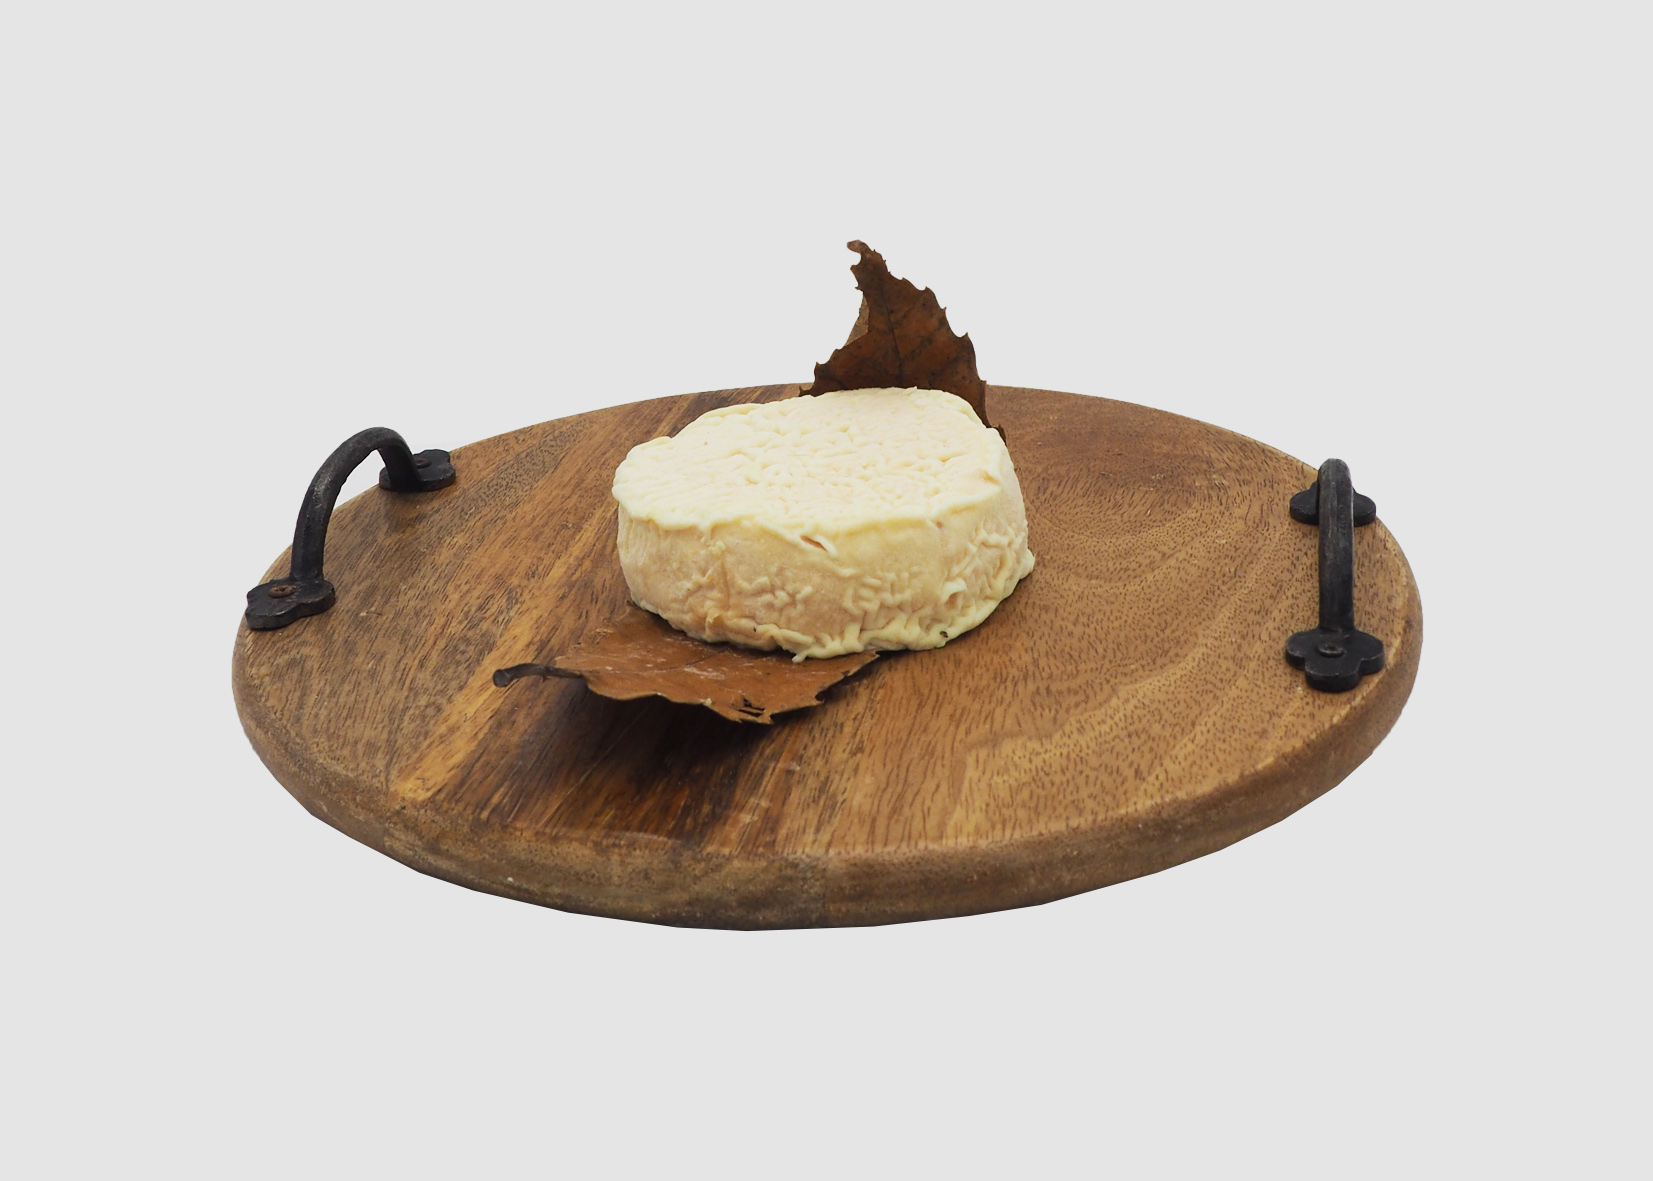 mothais-sur-feuille-fromage-france-meilleur-ouvrier-de-france